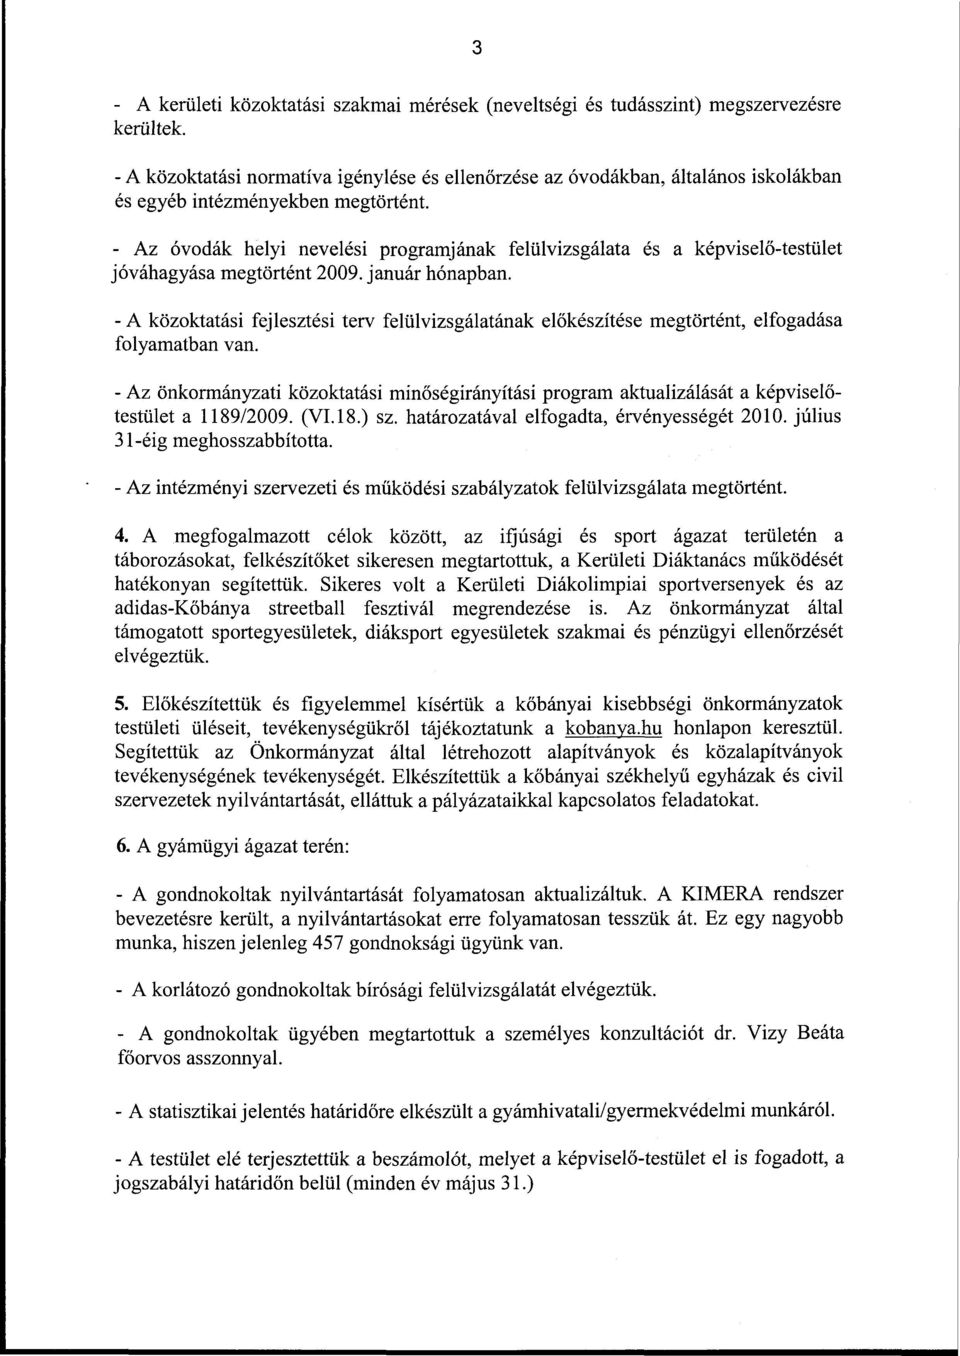 - Az óvodák helyi nevelési programjának felülvizsgálata és a képviselő-testület jóváhagyása megtörtént 2009. január hónapban.